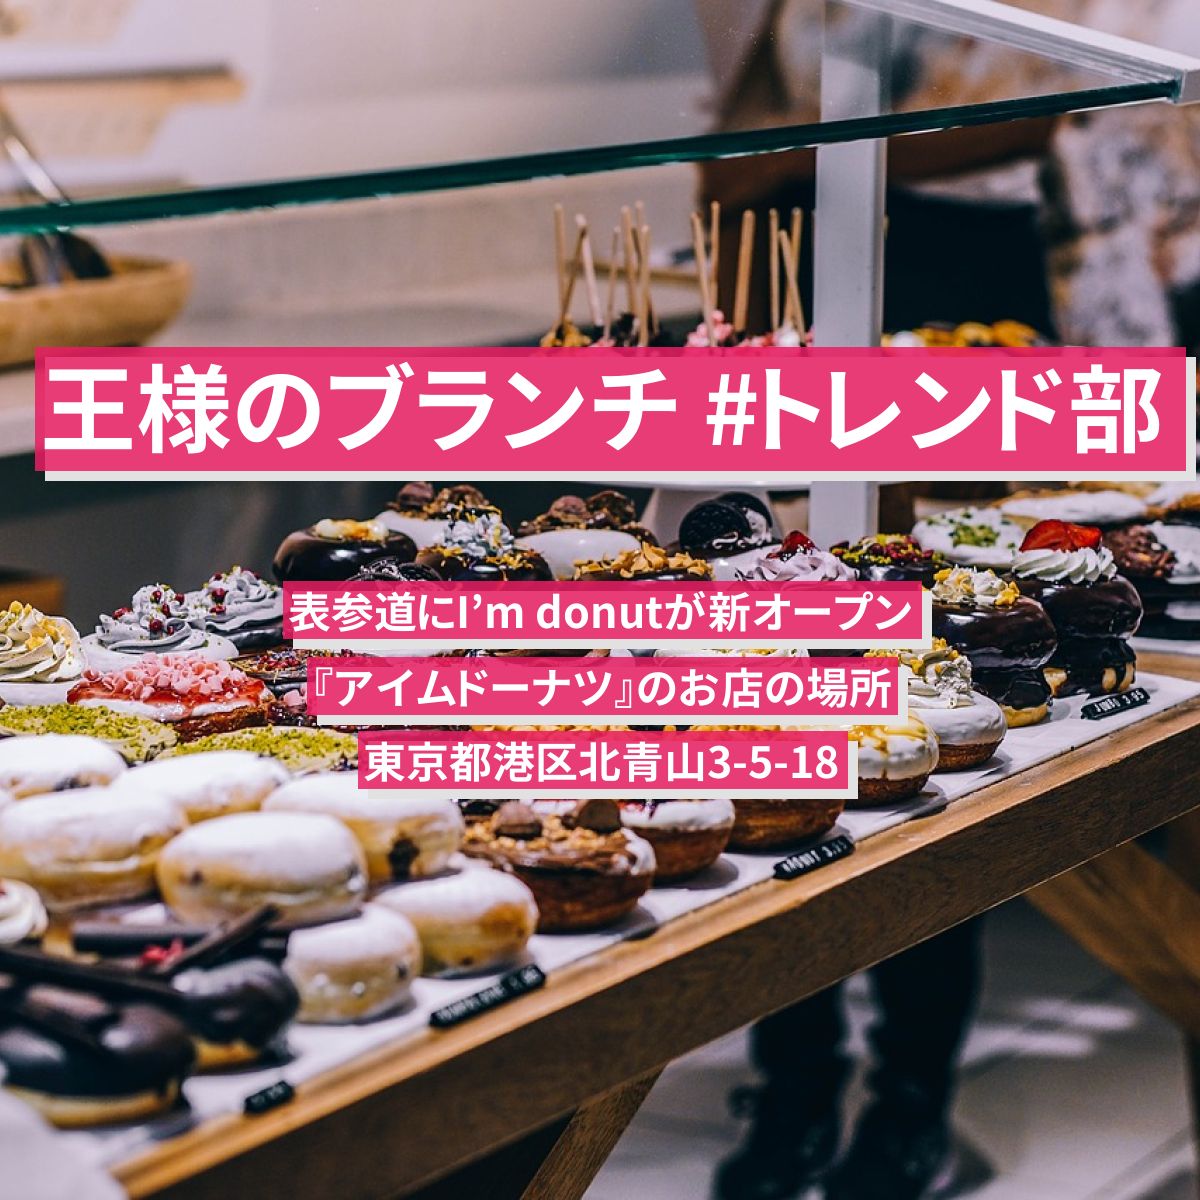 【王様のブランチ】#トレンド部　表参道にI’m donutが新オープン『アイムドーナツ』のお店の場所